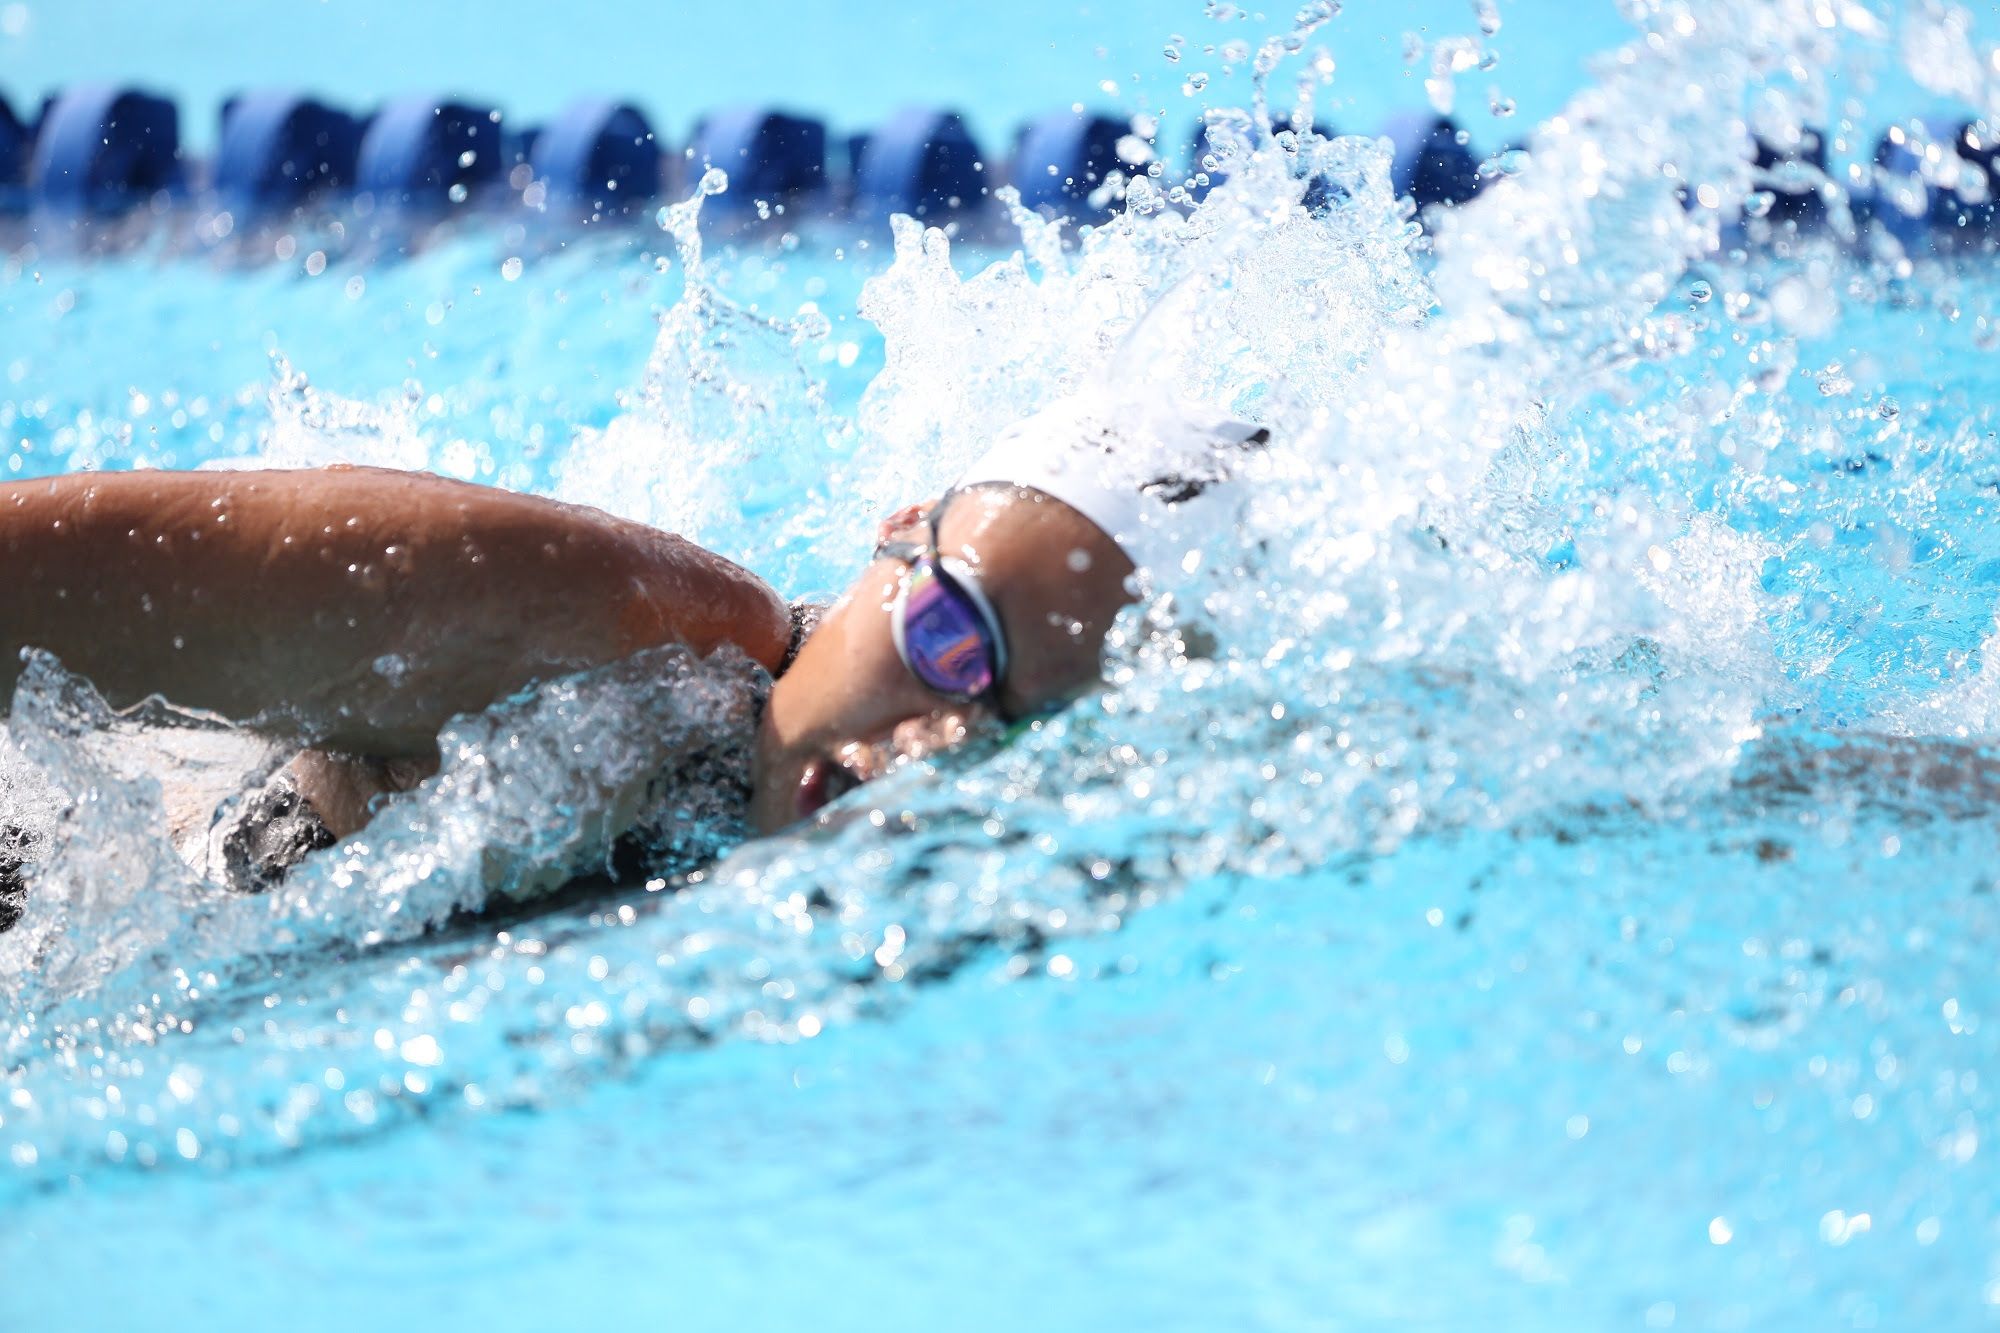 En confinamiento, continúan nadadores mexiquenses entrenando con rutinas específicas